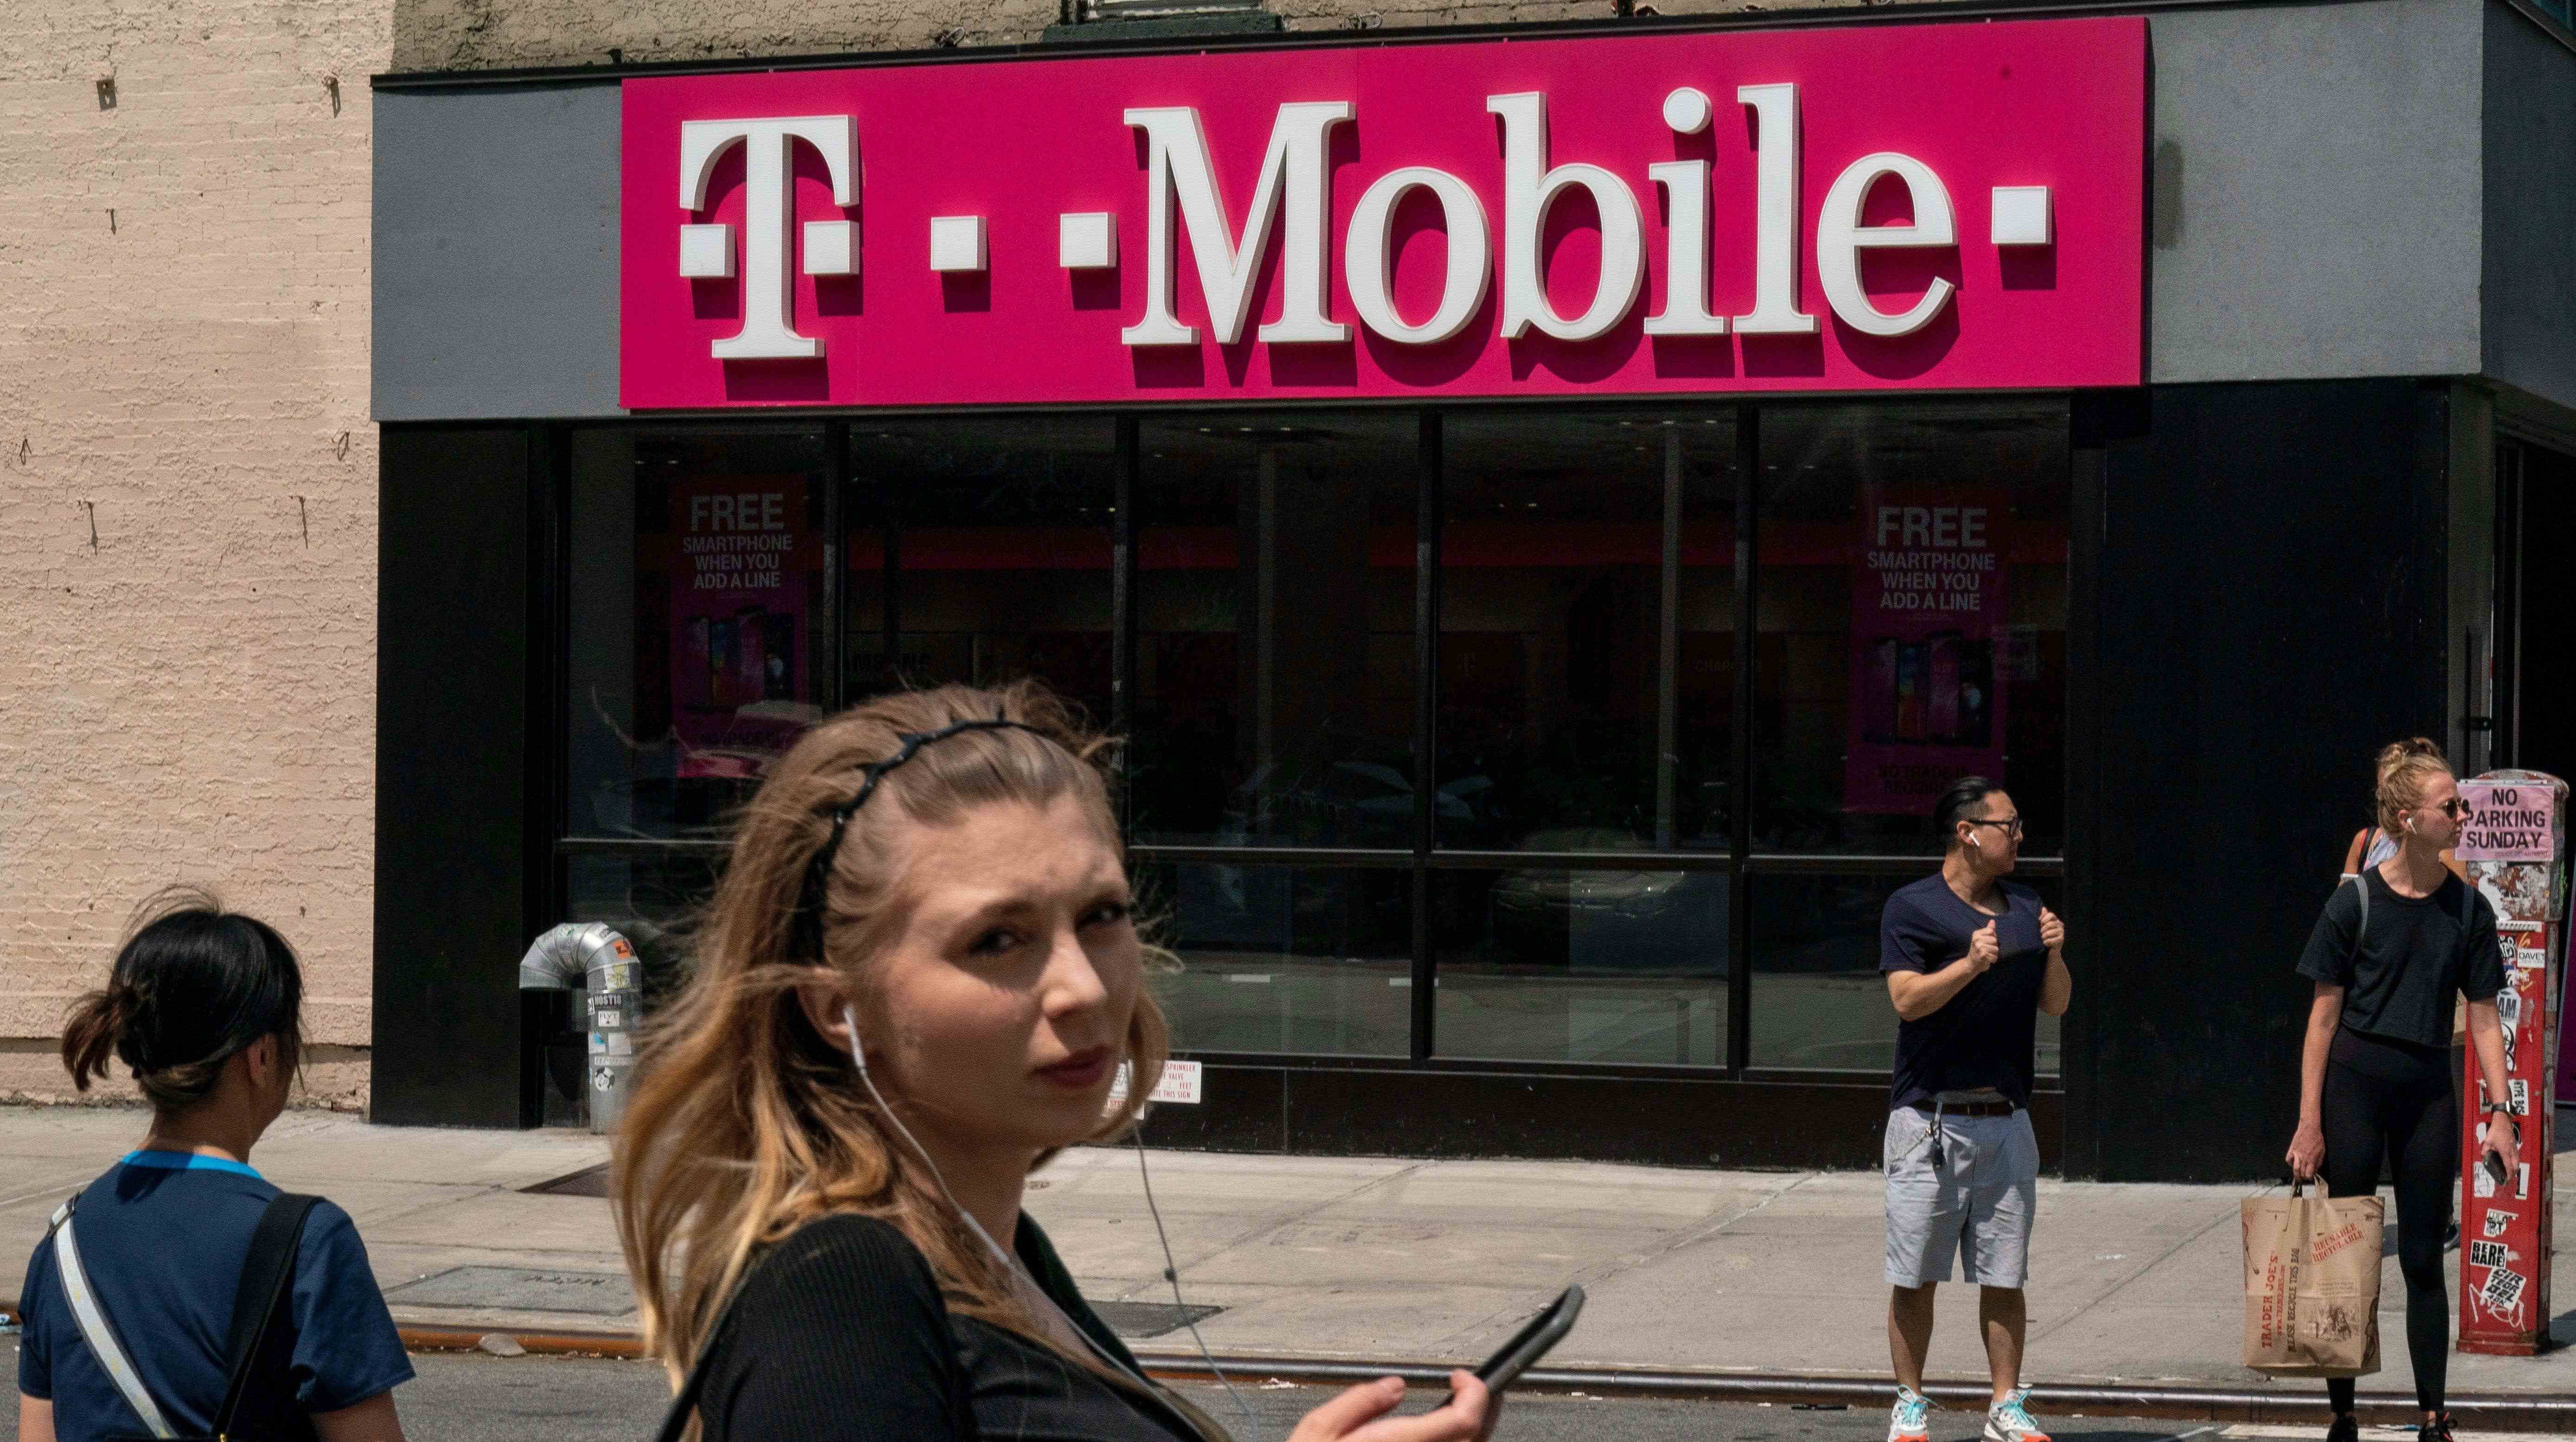 T-Mobile Faturanız Haziran Ayında Daha Pahalı Olabilir başlıklı makale için resim